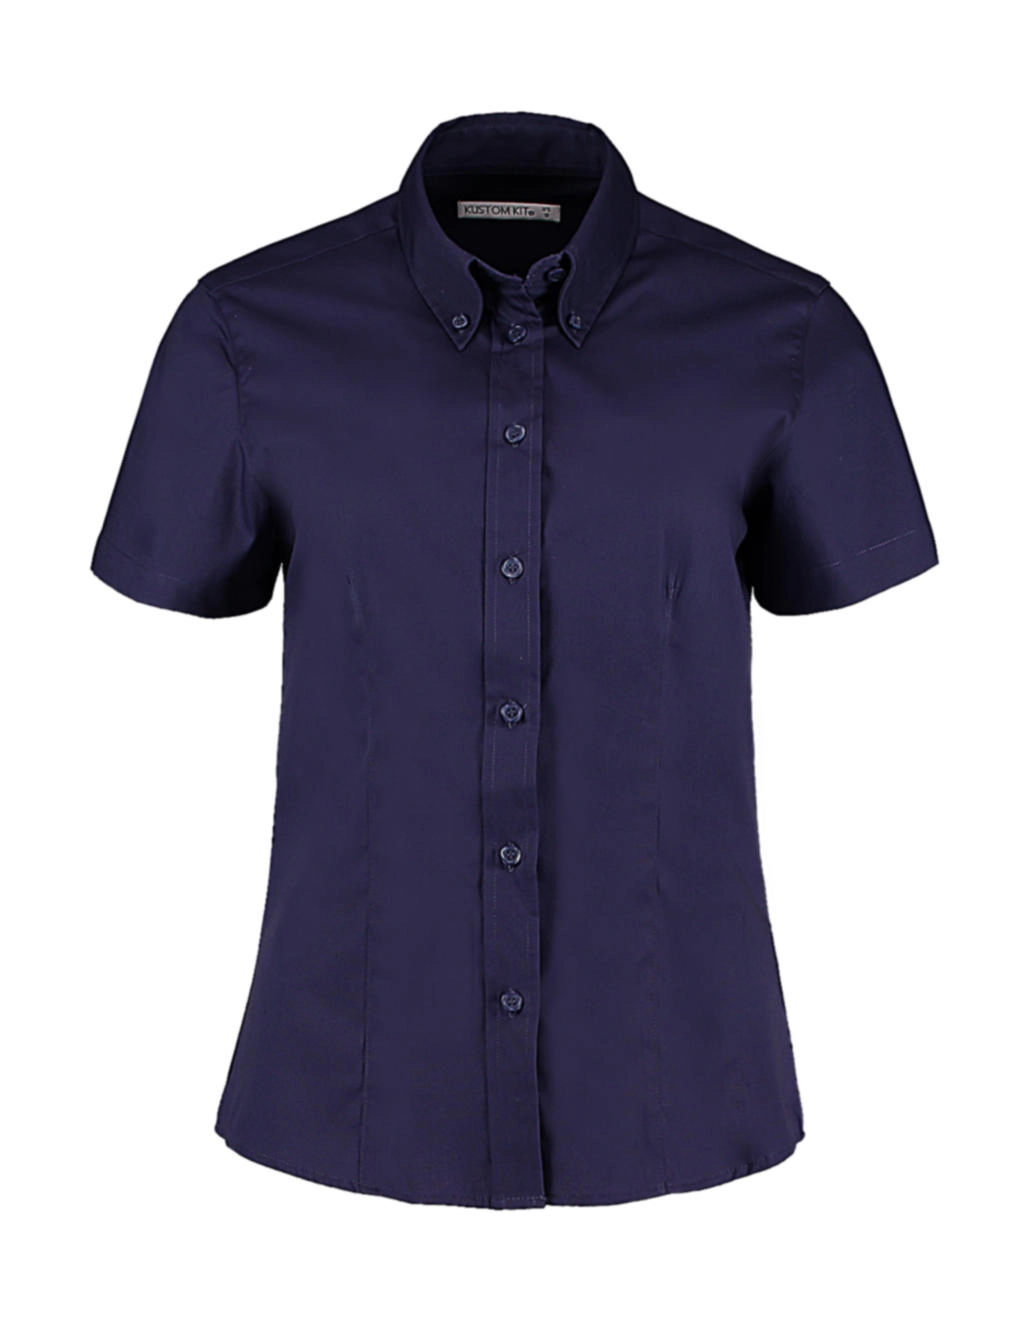 Women`s Tailored Fit Premium Oxford Shirt SSL zum Besticken und Bedrucken in der Farbe Midnight Navy mit Ihren Logo, Schriftzug oder Motiv.